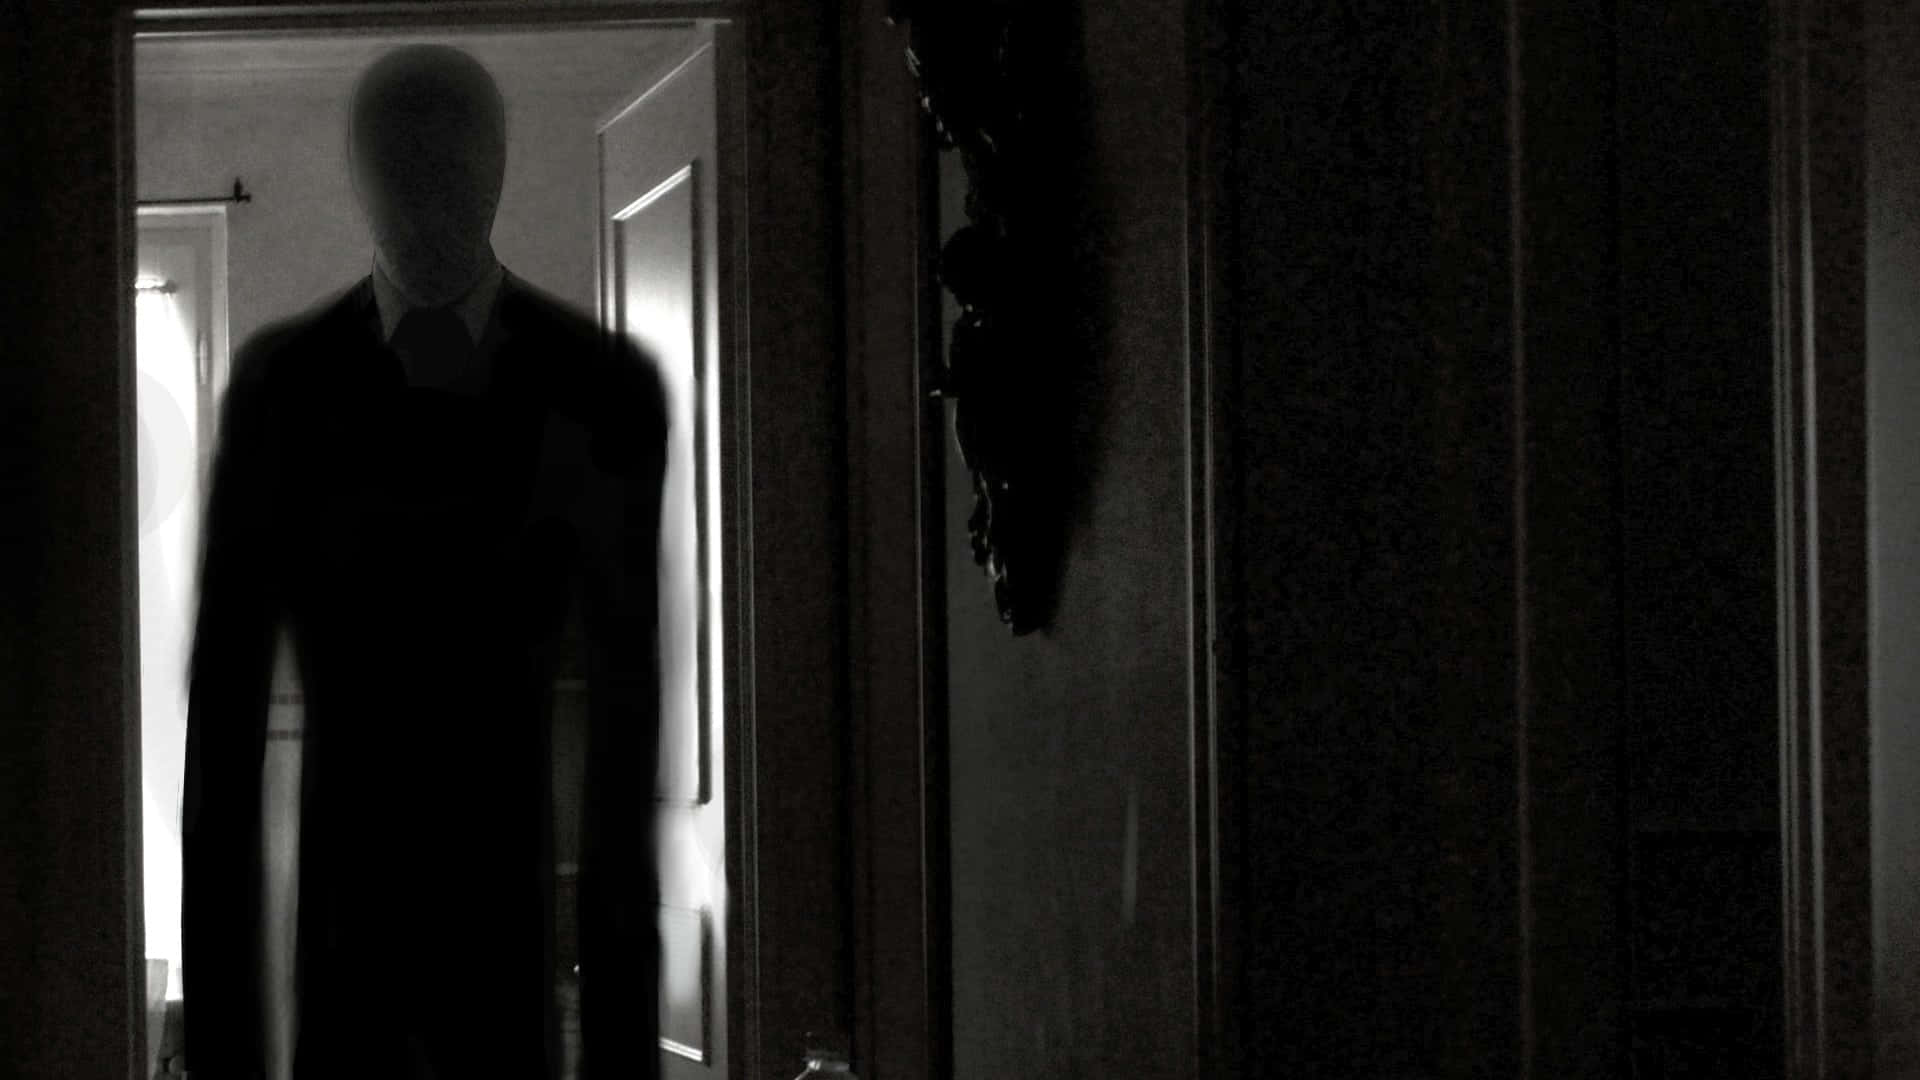 Imagende Slender Man En Traje Oscuro En Una Habitación Oscura